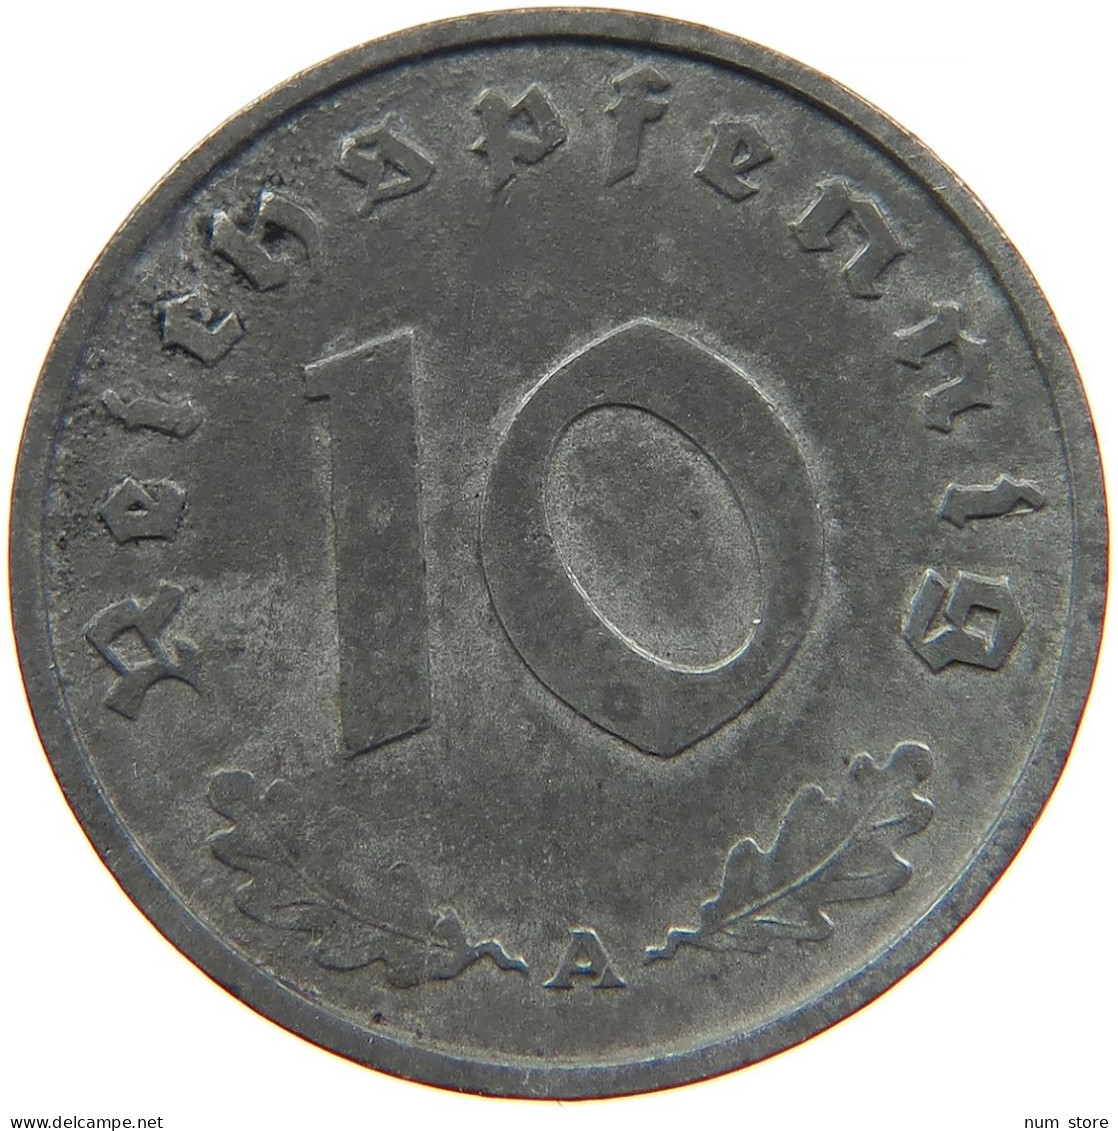 GERMANY 10 REICHSPFENNIG 1942 A #s095 0049 - 10 Reichspfennig